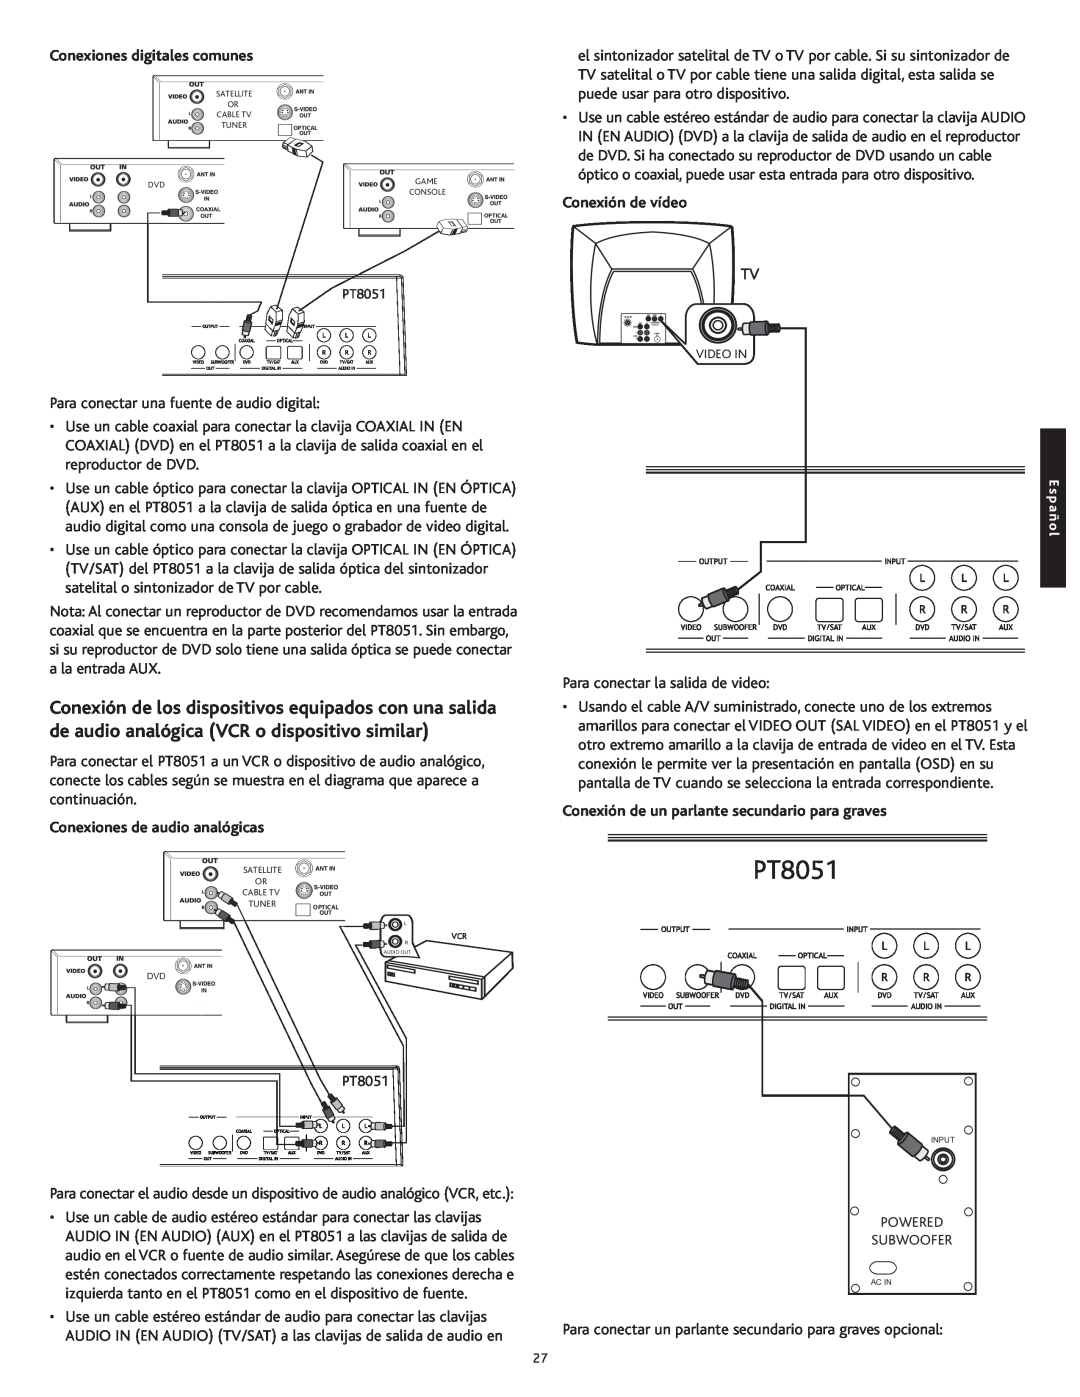 Altec Lansing PT8051 manual Conexiones digitales comunes, Conexión de vídeo, Conexiones de audio analógicas 